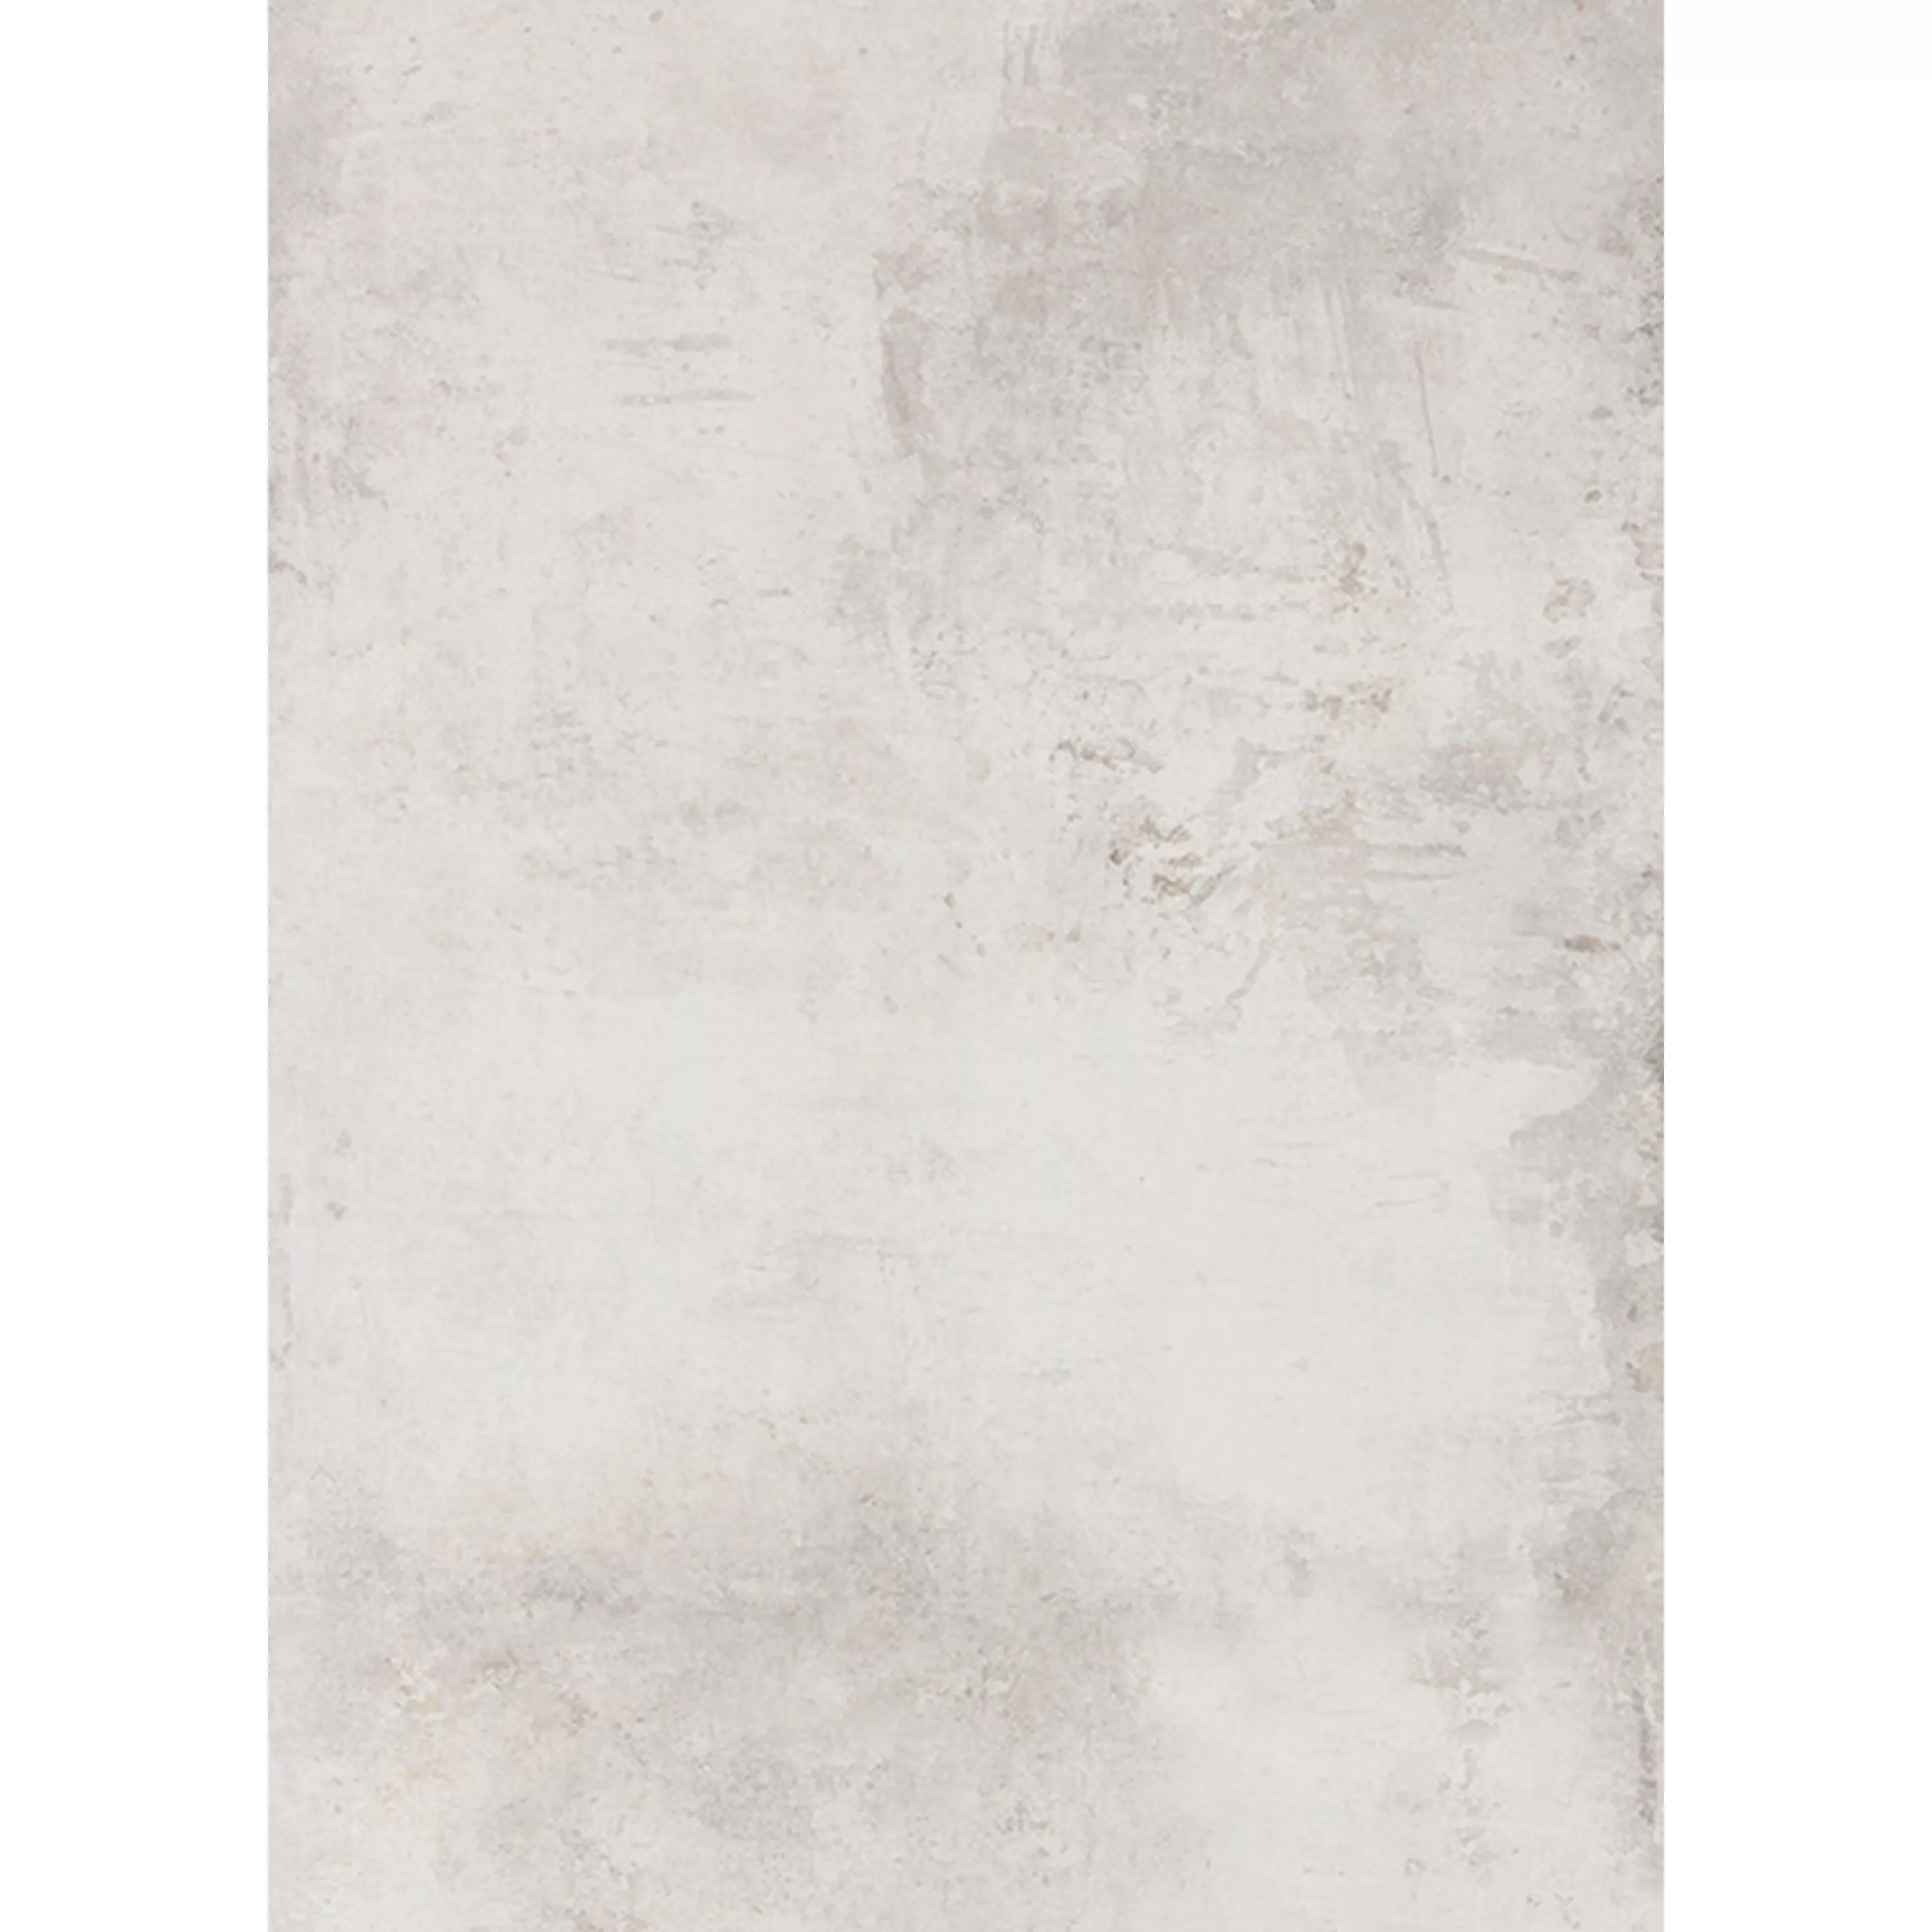 Podlahové Dlaždice Poetic Kámen Vzhled R10/A Bílá Základní Dlaždice 60x120cm